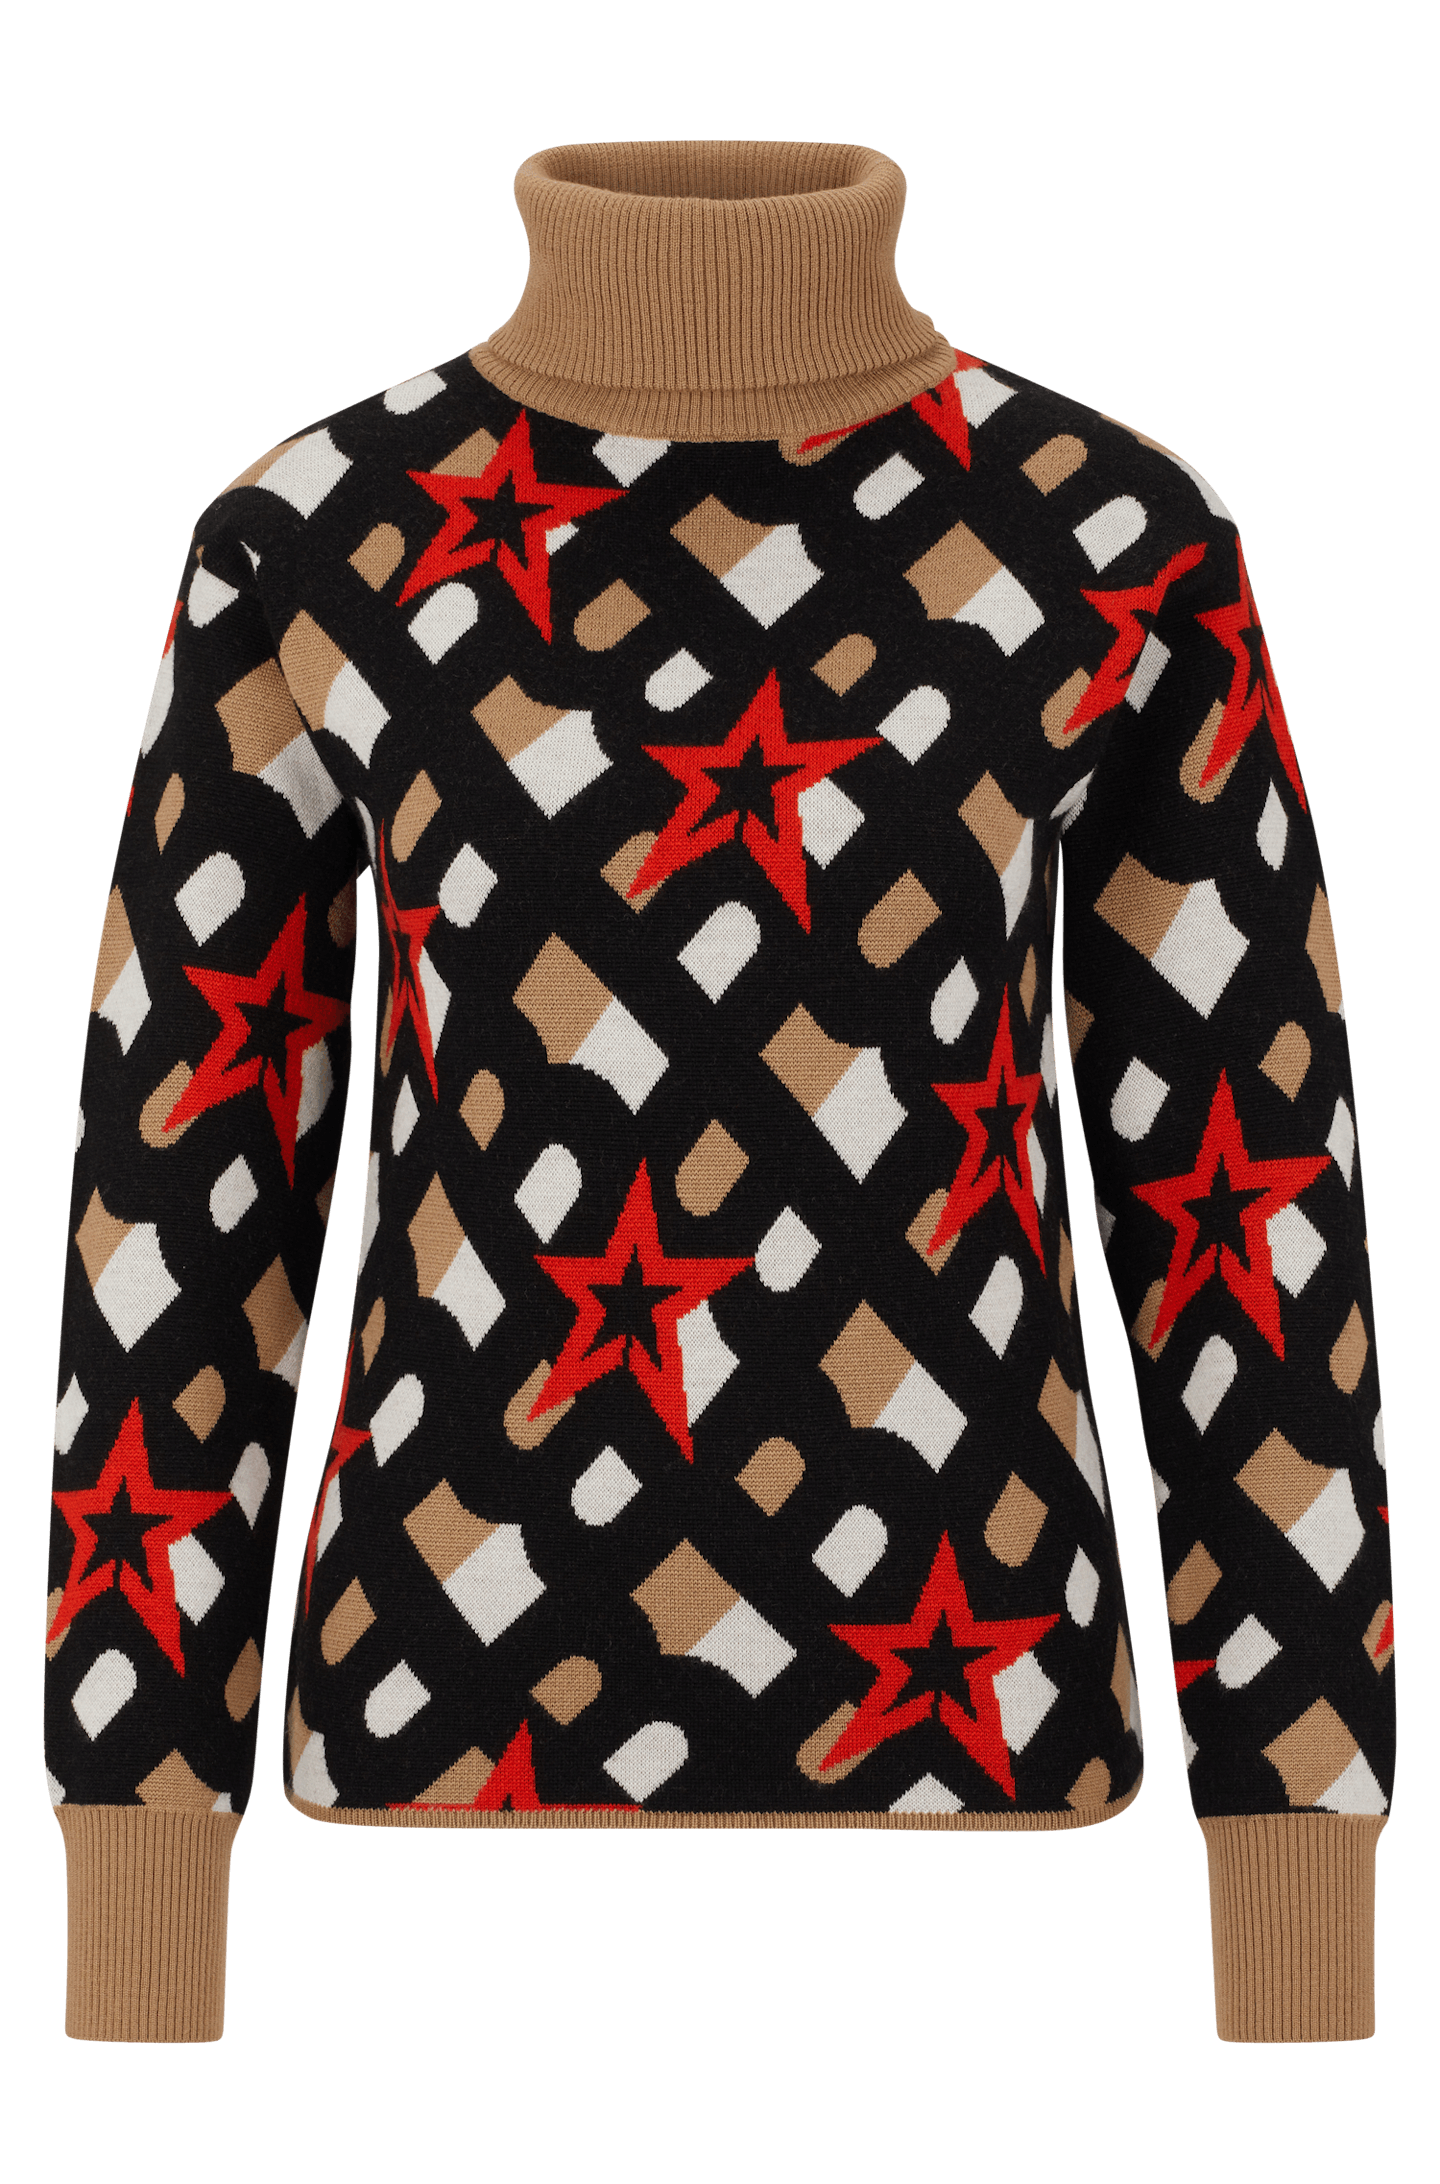 Merino-Wool Sweater With Branding